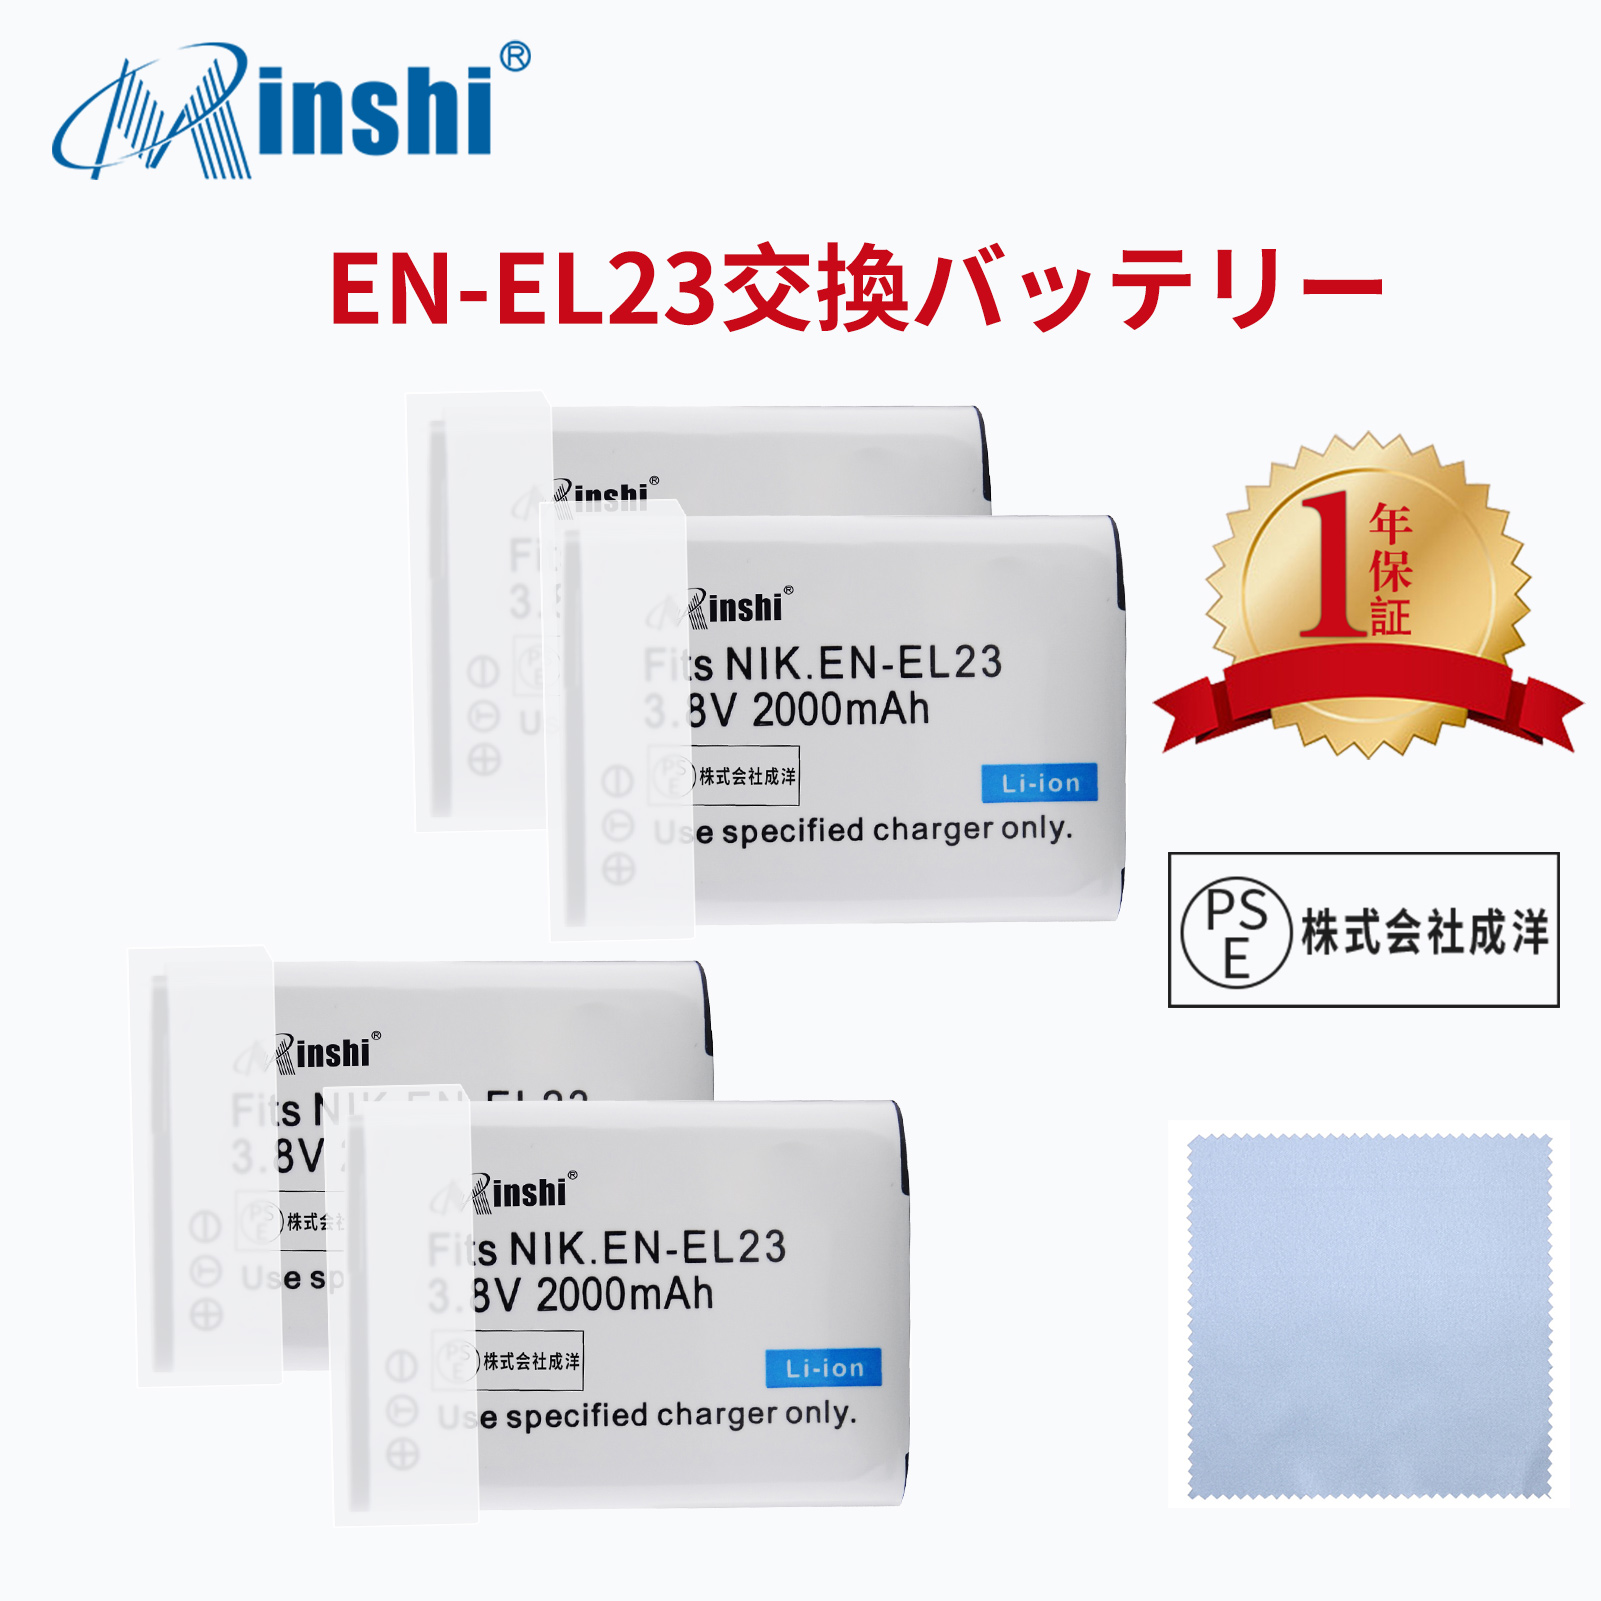 【4個セット&クロス付き】 minshi NIKON  P610S EN-EL23 対応 互換バッテリー 2000mAh PSE認定済 高品質交換用バッテリー